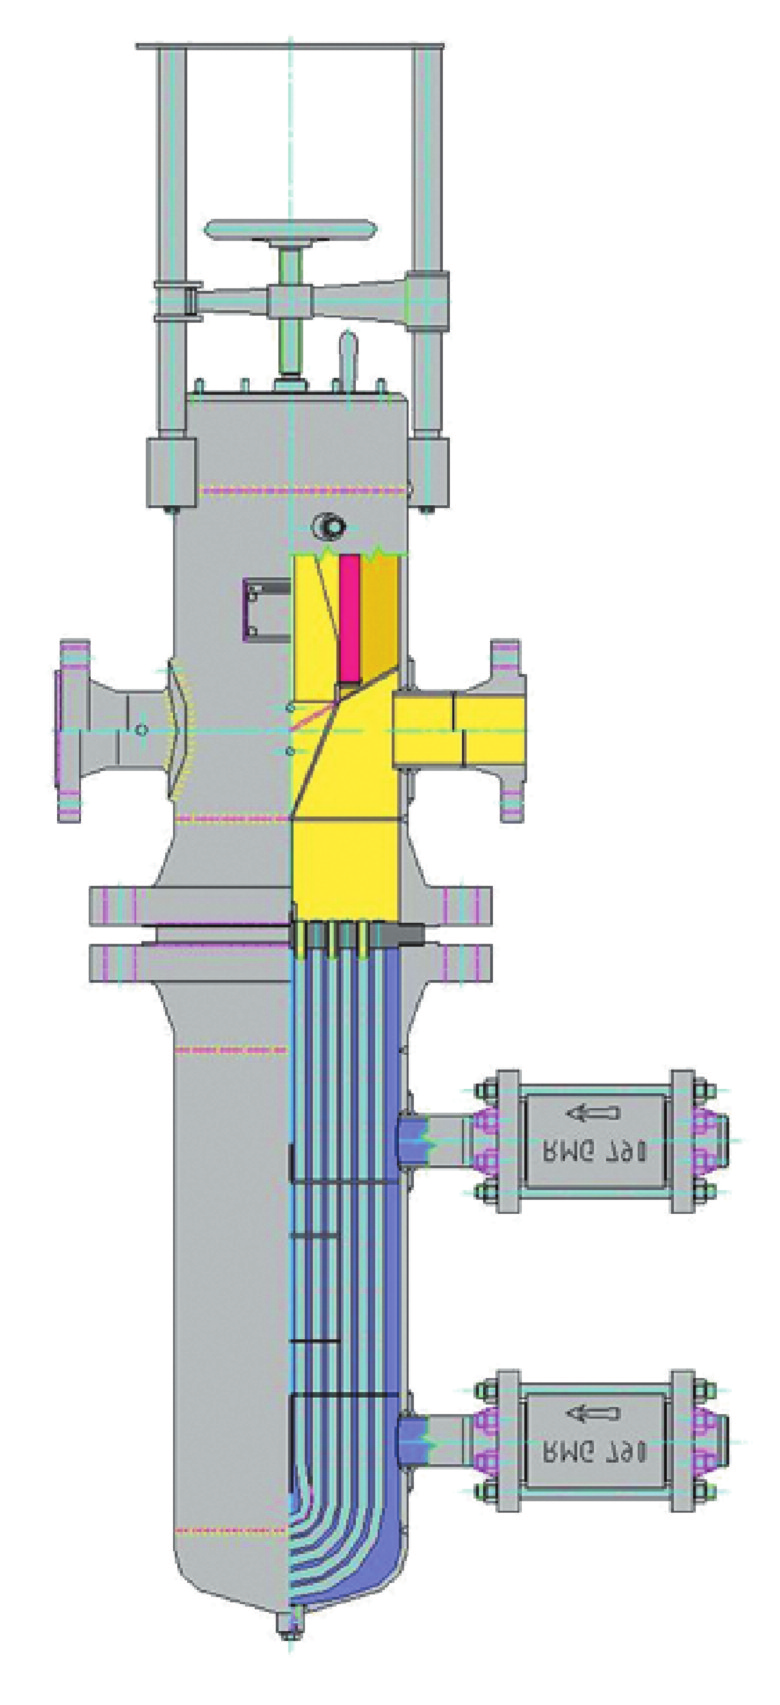 Filtropodgrzewacze gazu FGWC Budowa i zasada działania Filtropodgrzewacze gazu FGWC są urządzeniami scalającymi w sobie funkcję filtrów z wkładami celulozowymi oraz podgrzewaczy jednocześnie.